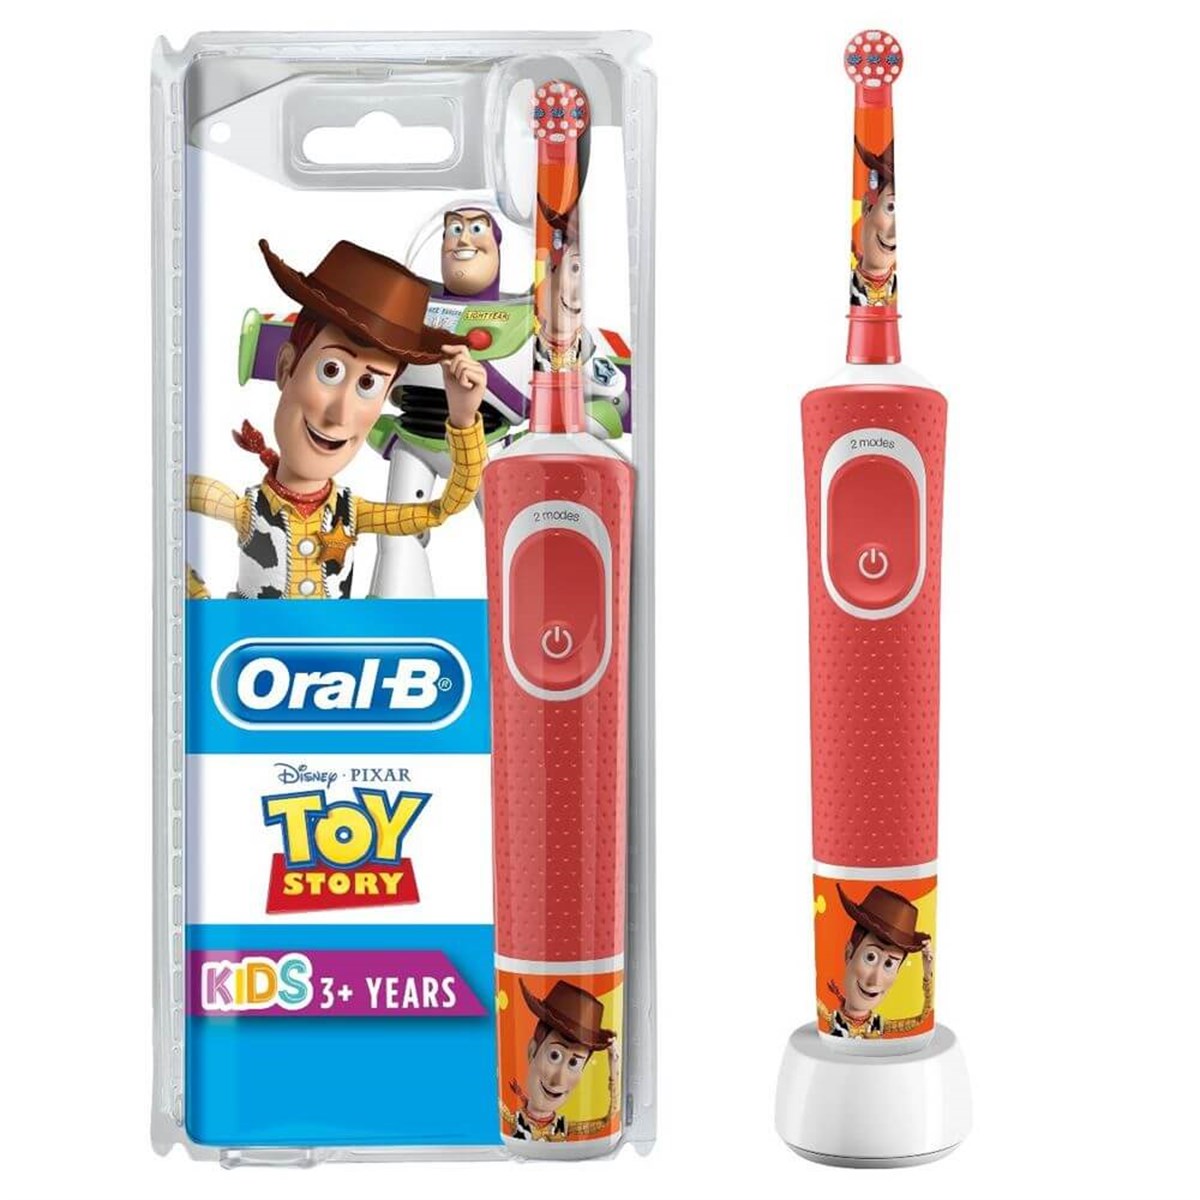 Oral-B Toy Story Şarj Edilebilir Diş Fırçası Çocuk D100 | Ehersey.com